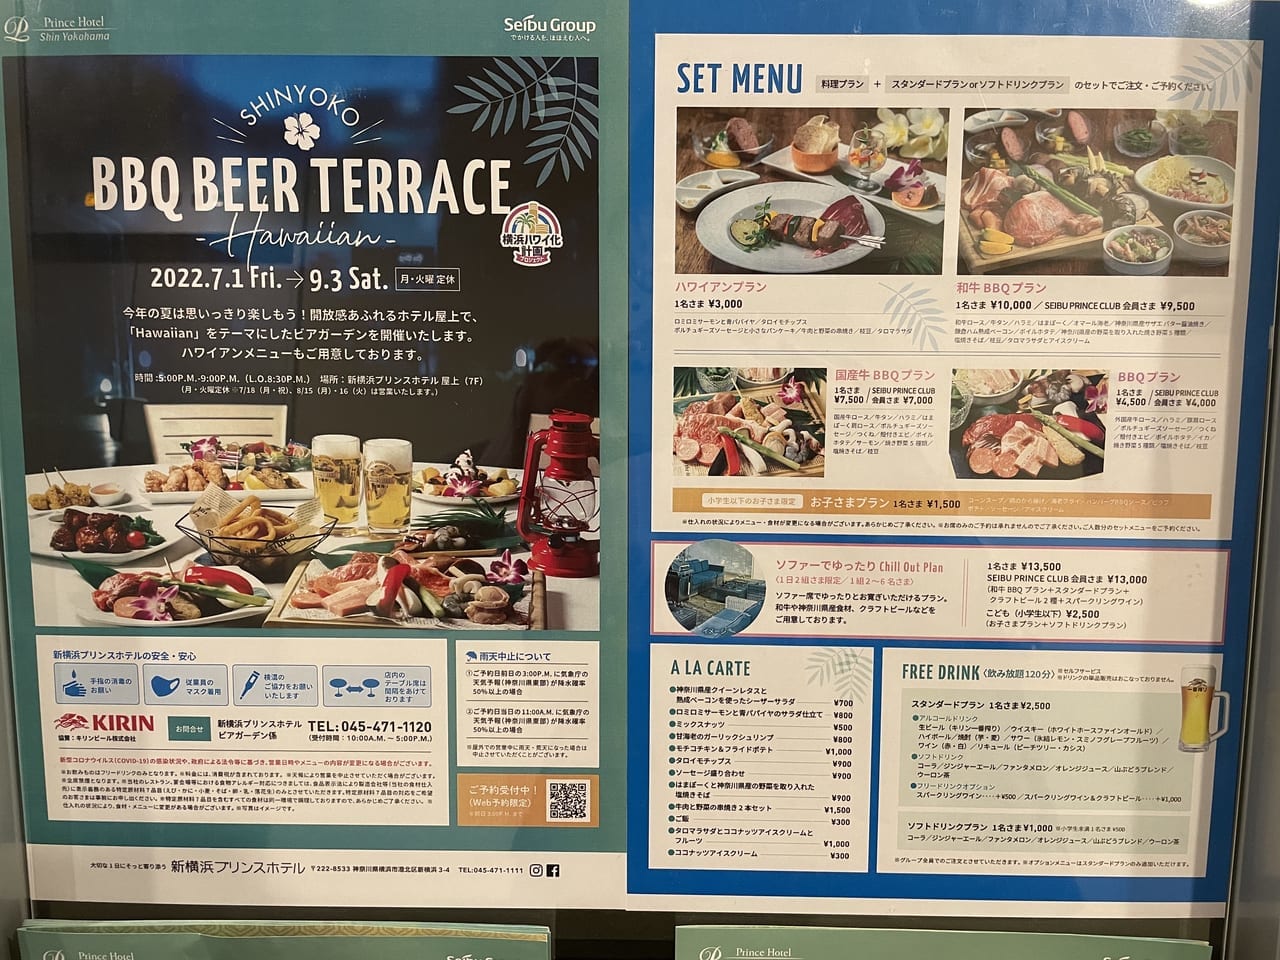 BBQ BEER TERRACE -HAWAIIAN - 新横浜 - プリンスホテル